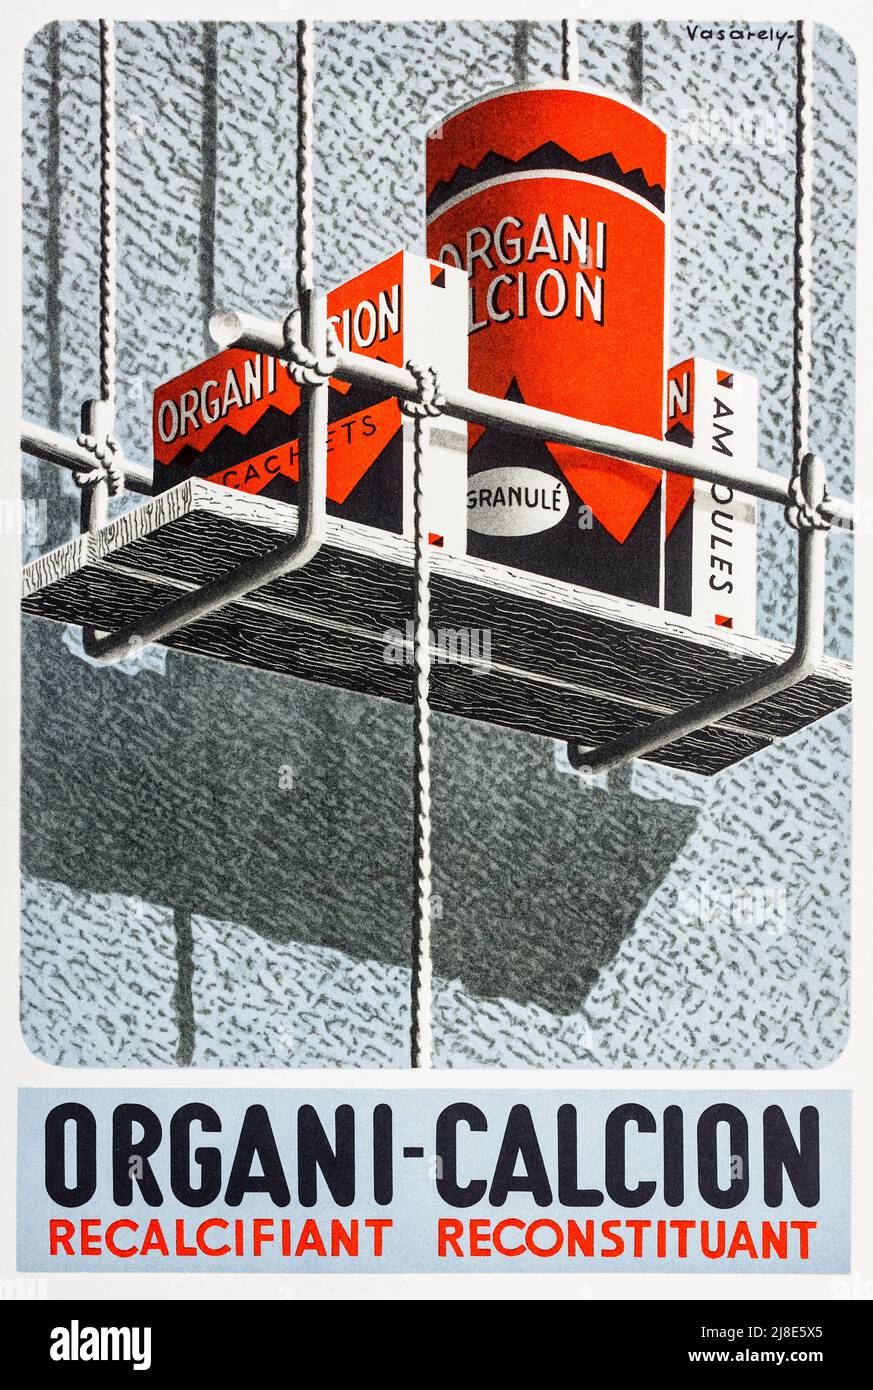 1930s Französische Werbung für das Nahrungsergänzungsmittel „Organi-Calcion“ für Kalziummangel, illustriert von Victor Vasarely. Stockfoto